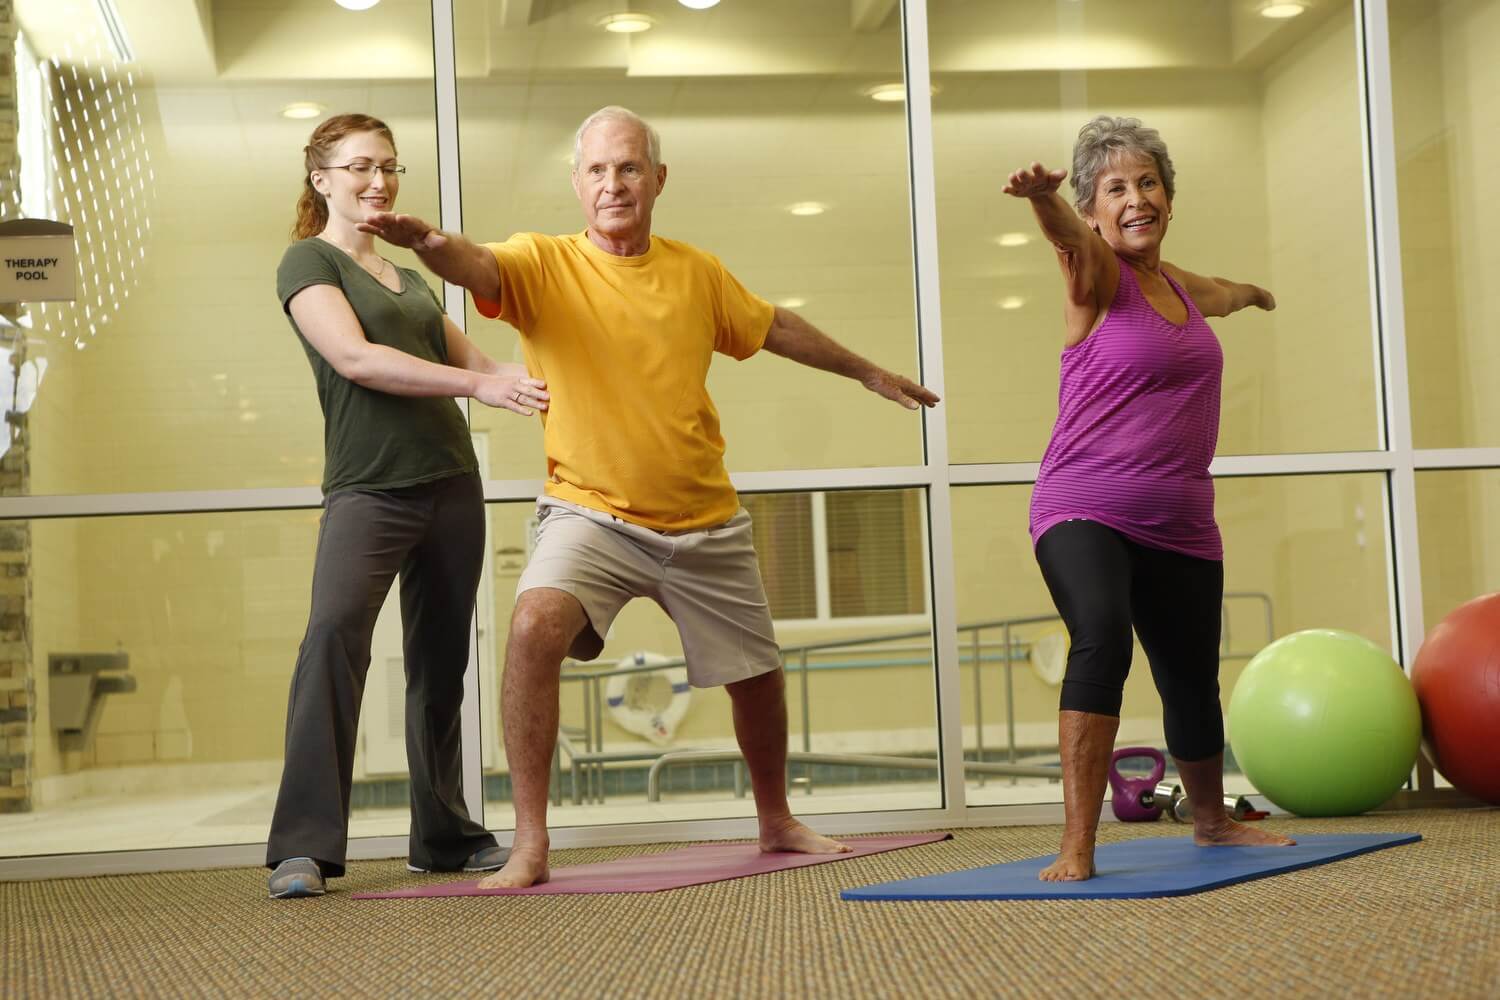 7-exercises-for-seniors-conservatory-senior-living